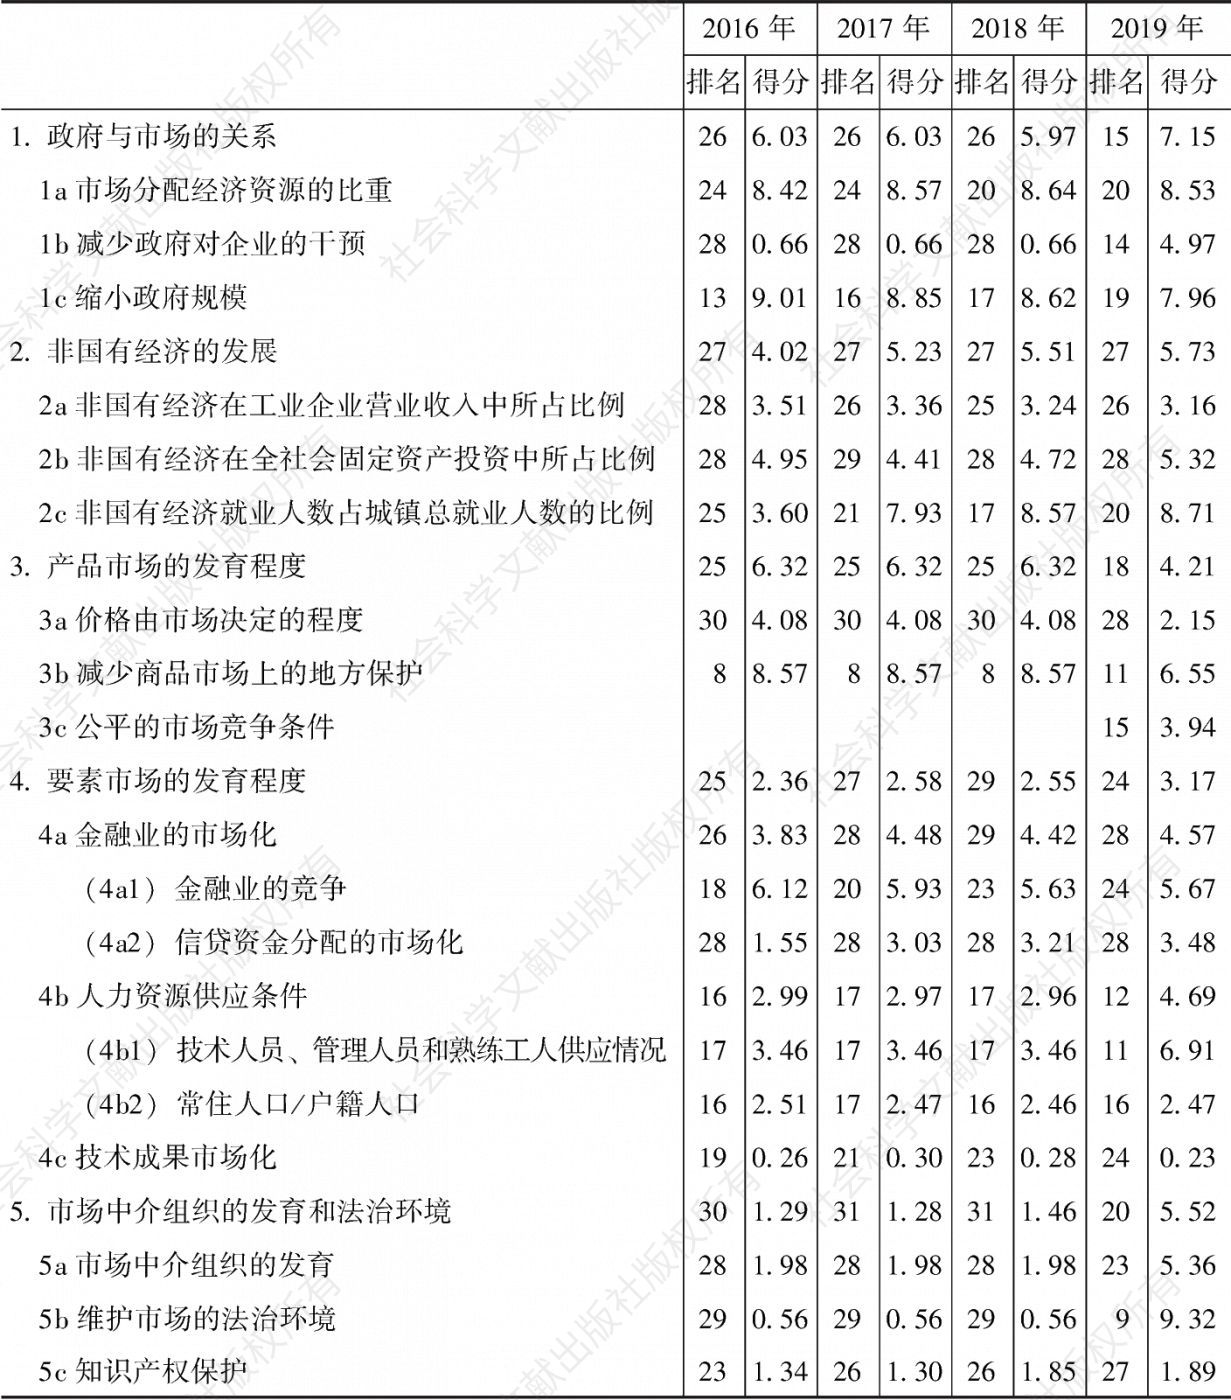 云南市场化各方面指数和分项指数的排名及得分